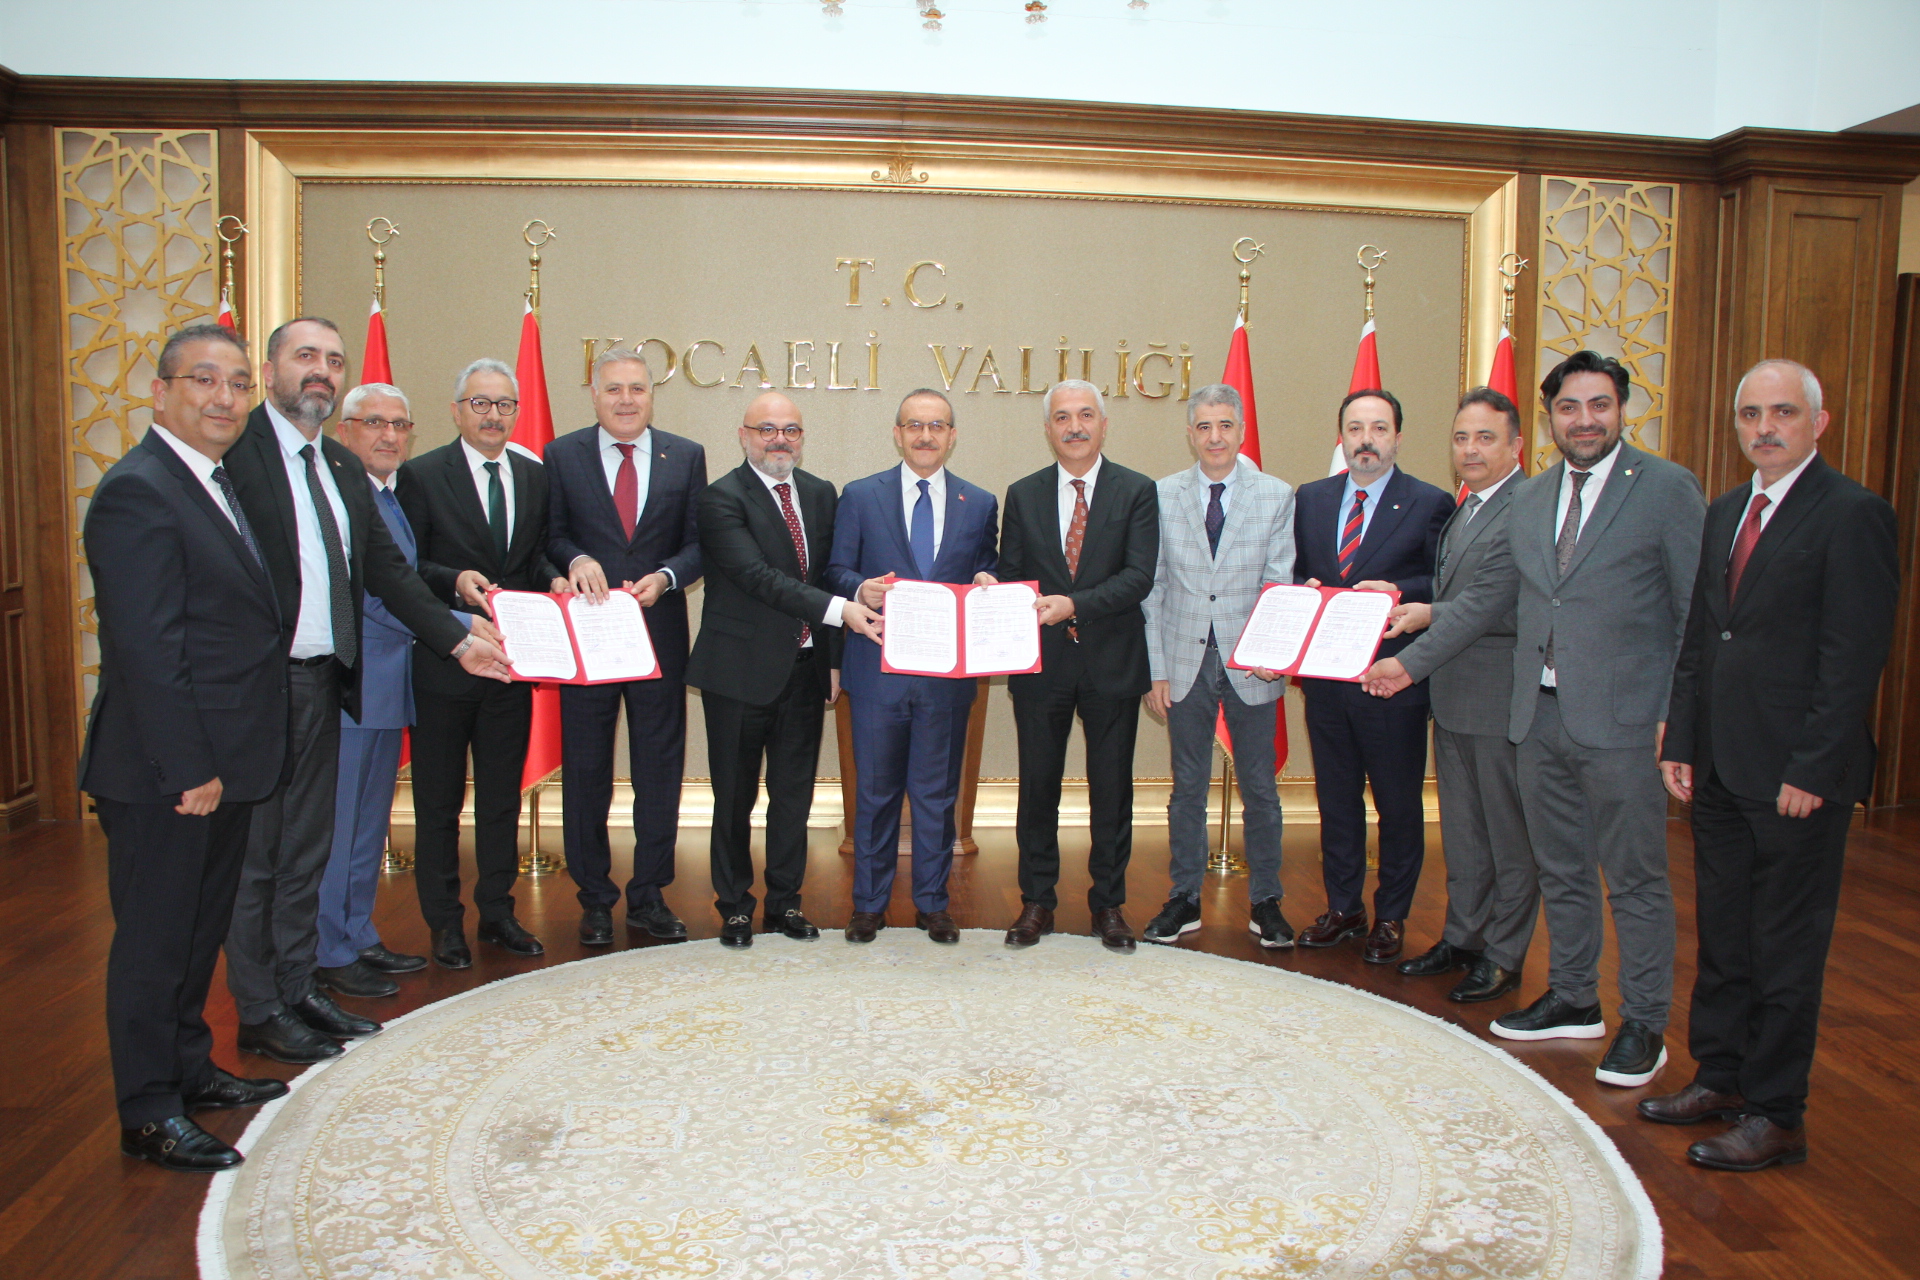 Kocaeli Valiliği ile Gebze Ticaret Odası arasında atölye binası inşası protokolü imzalandı